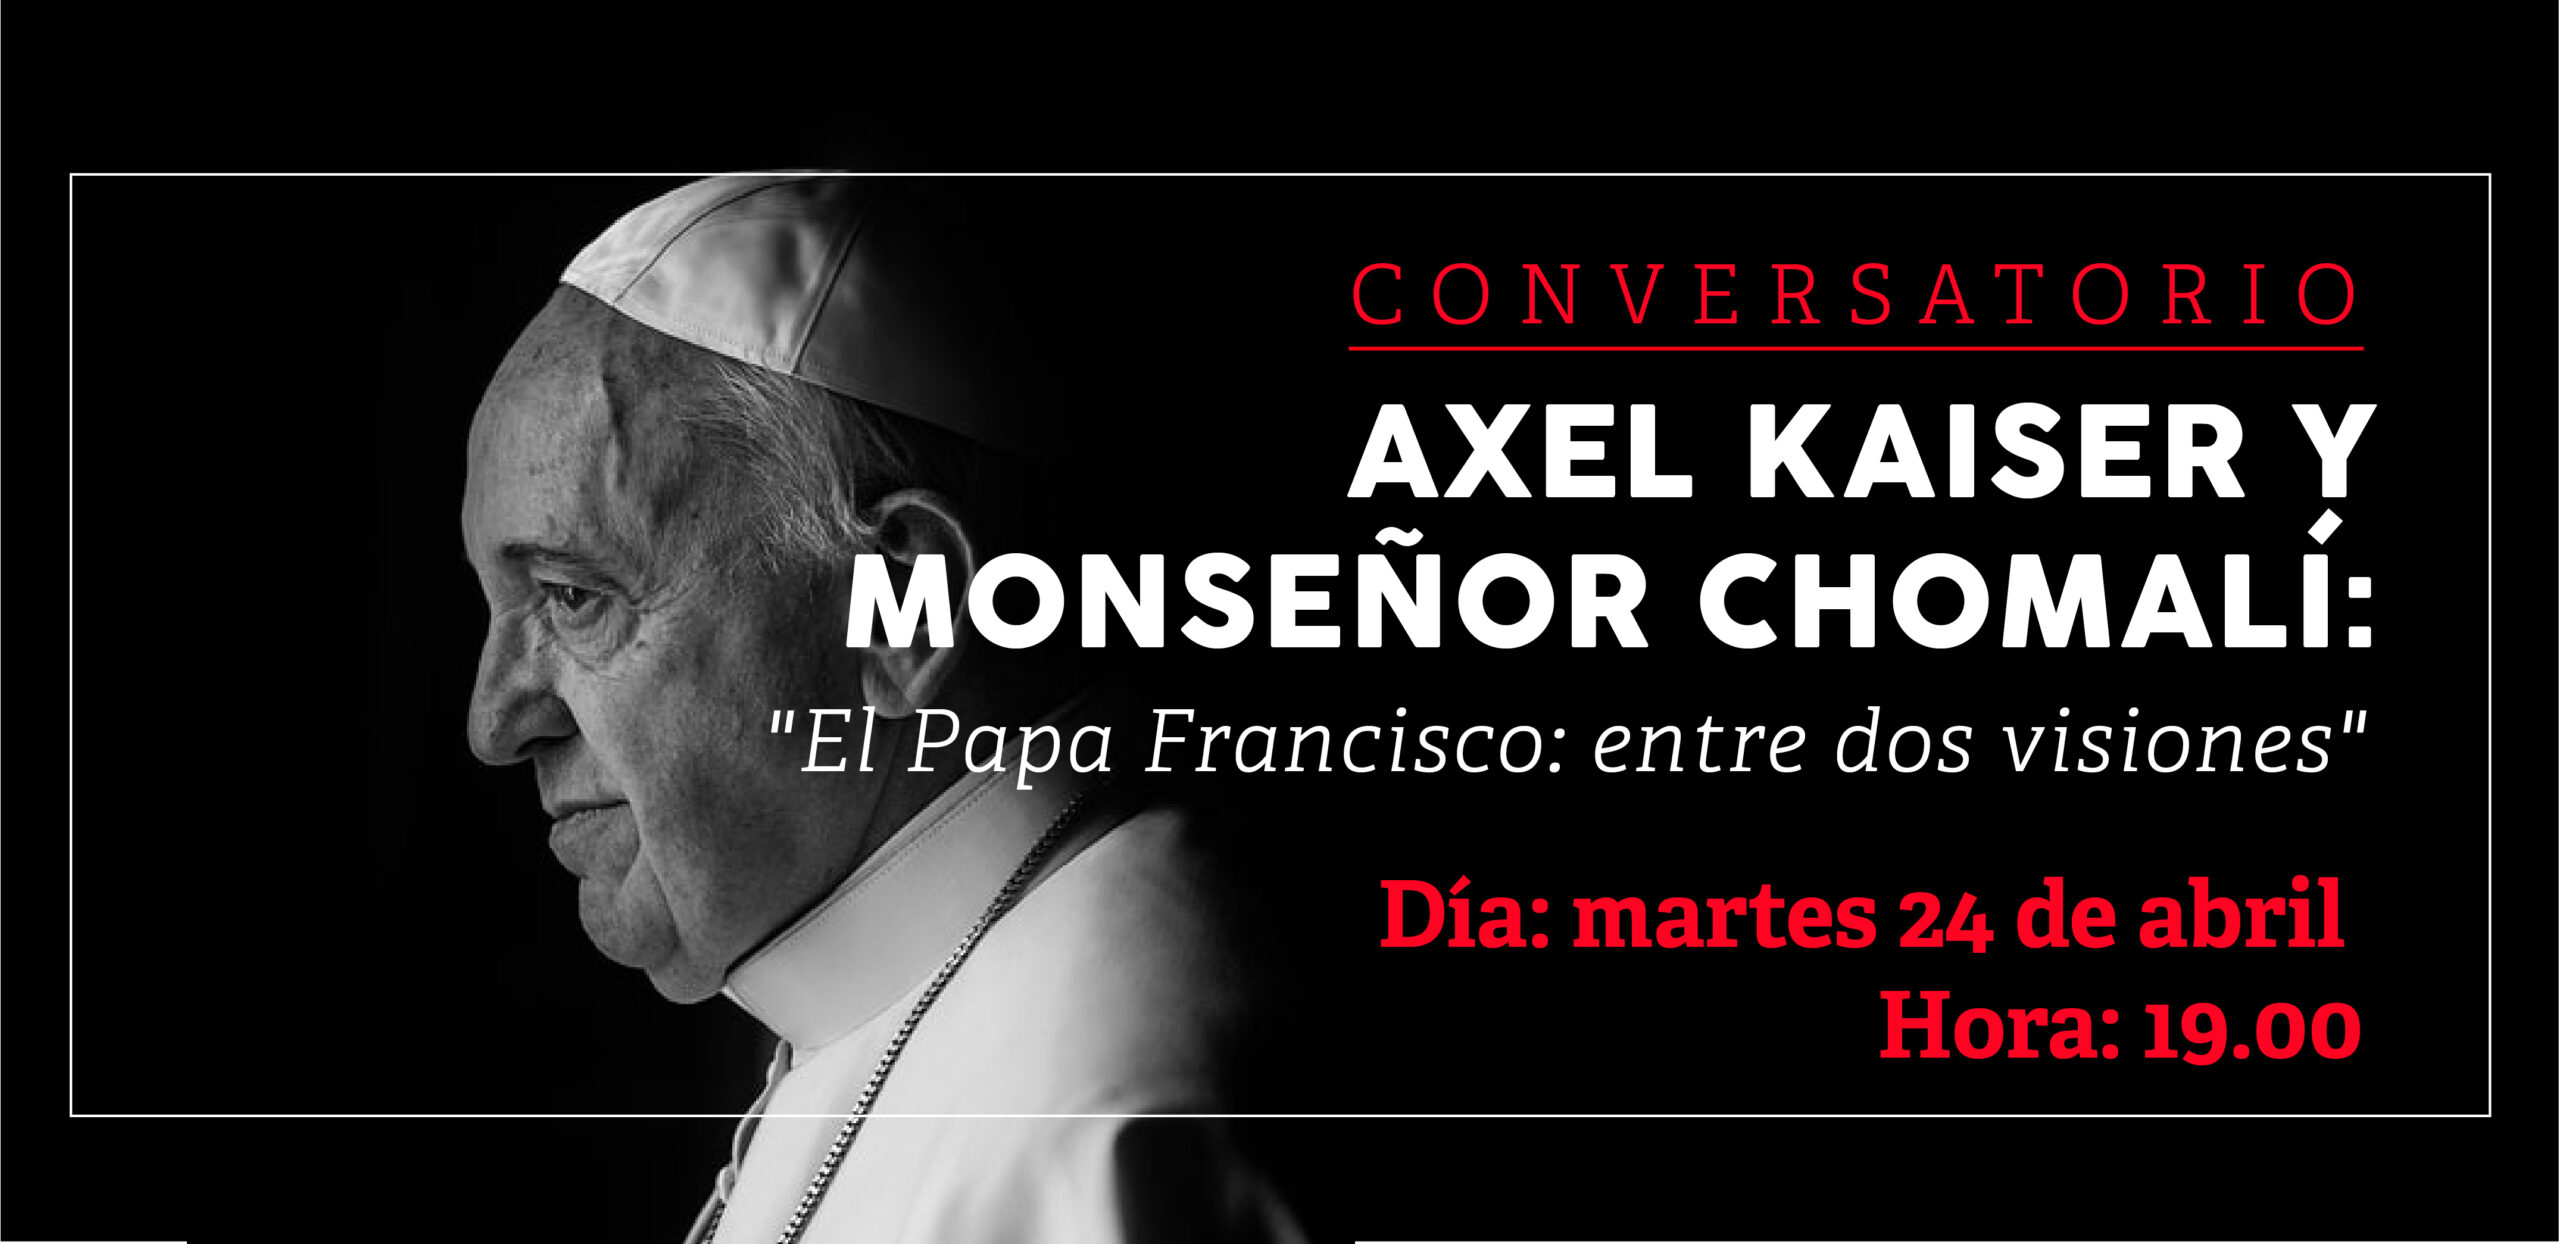 Conversatorio - Axel Kaiser y Monseñor Chomalí 